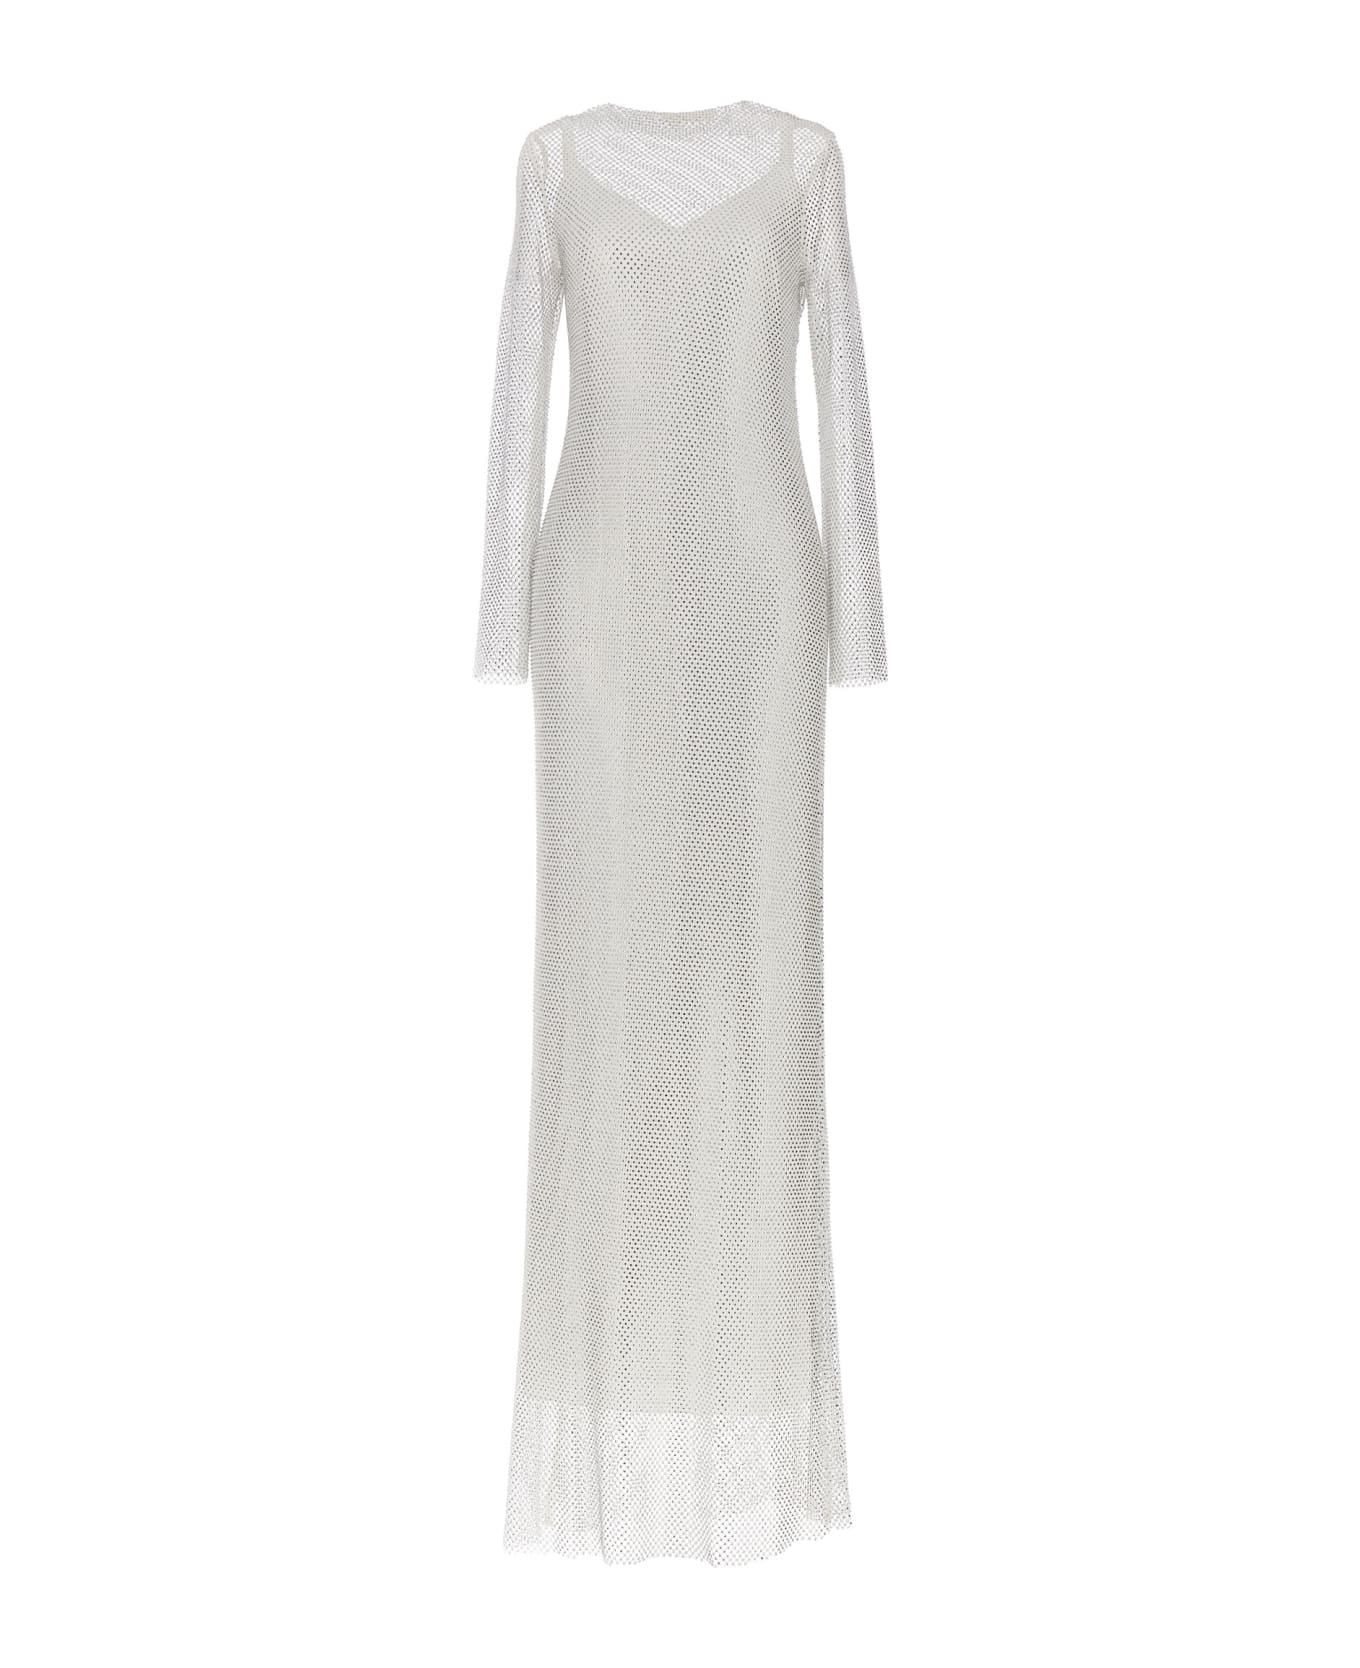 Max Mara 'caracas' Dress - White